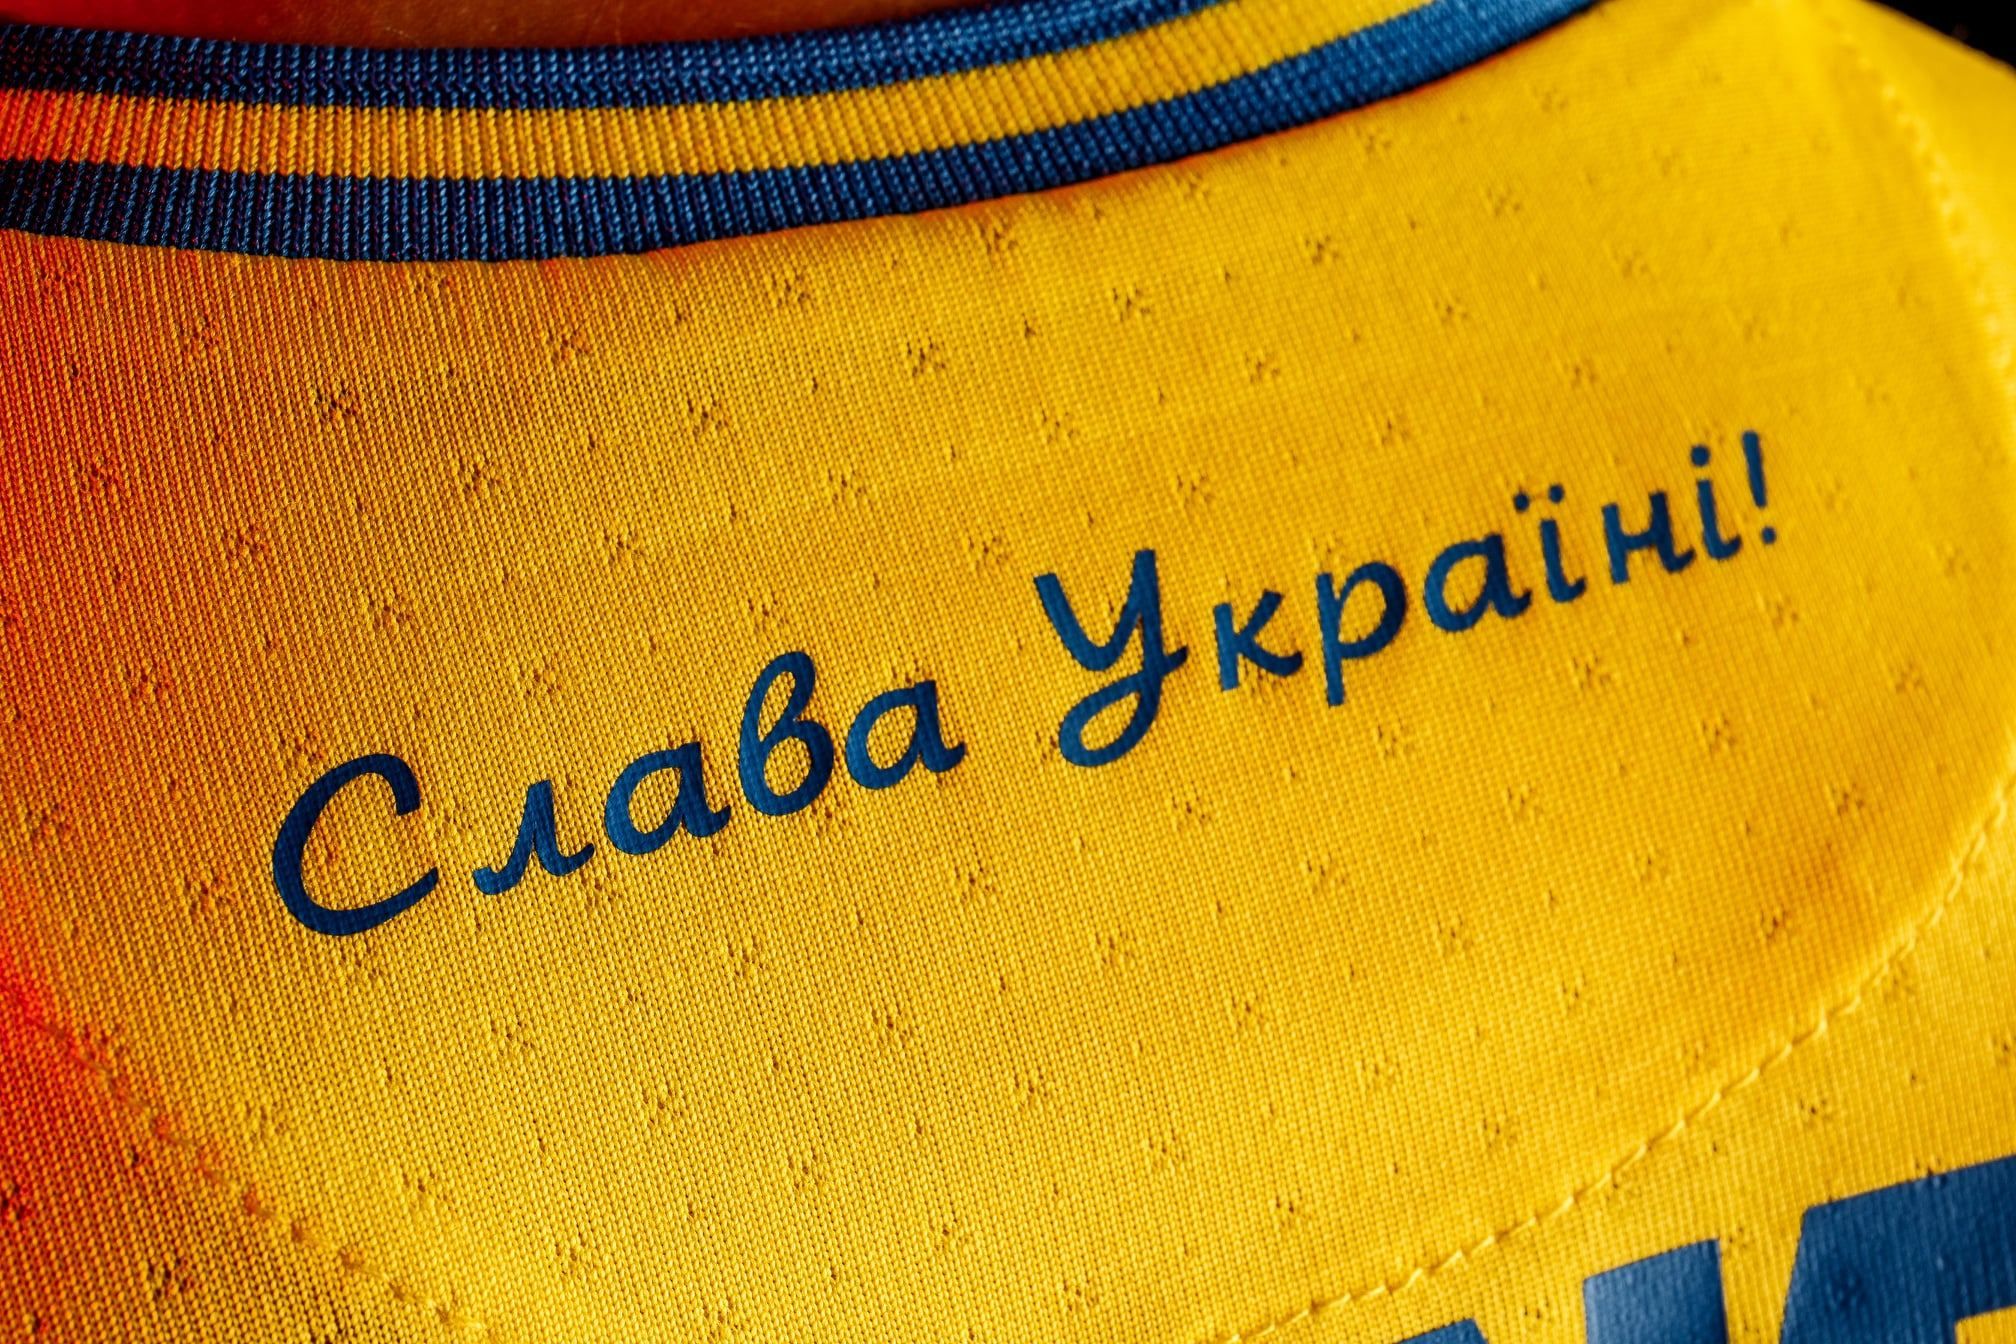 Меняем традиционные клубные цвета на сине-желтые, – Кривбасс инициировал патриотический флешмоб